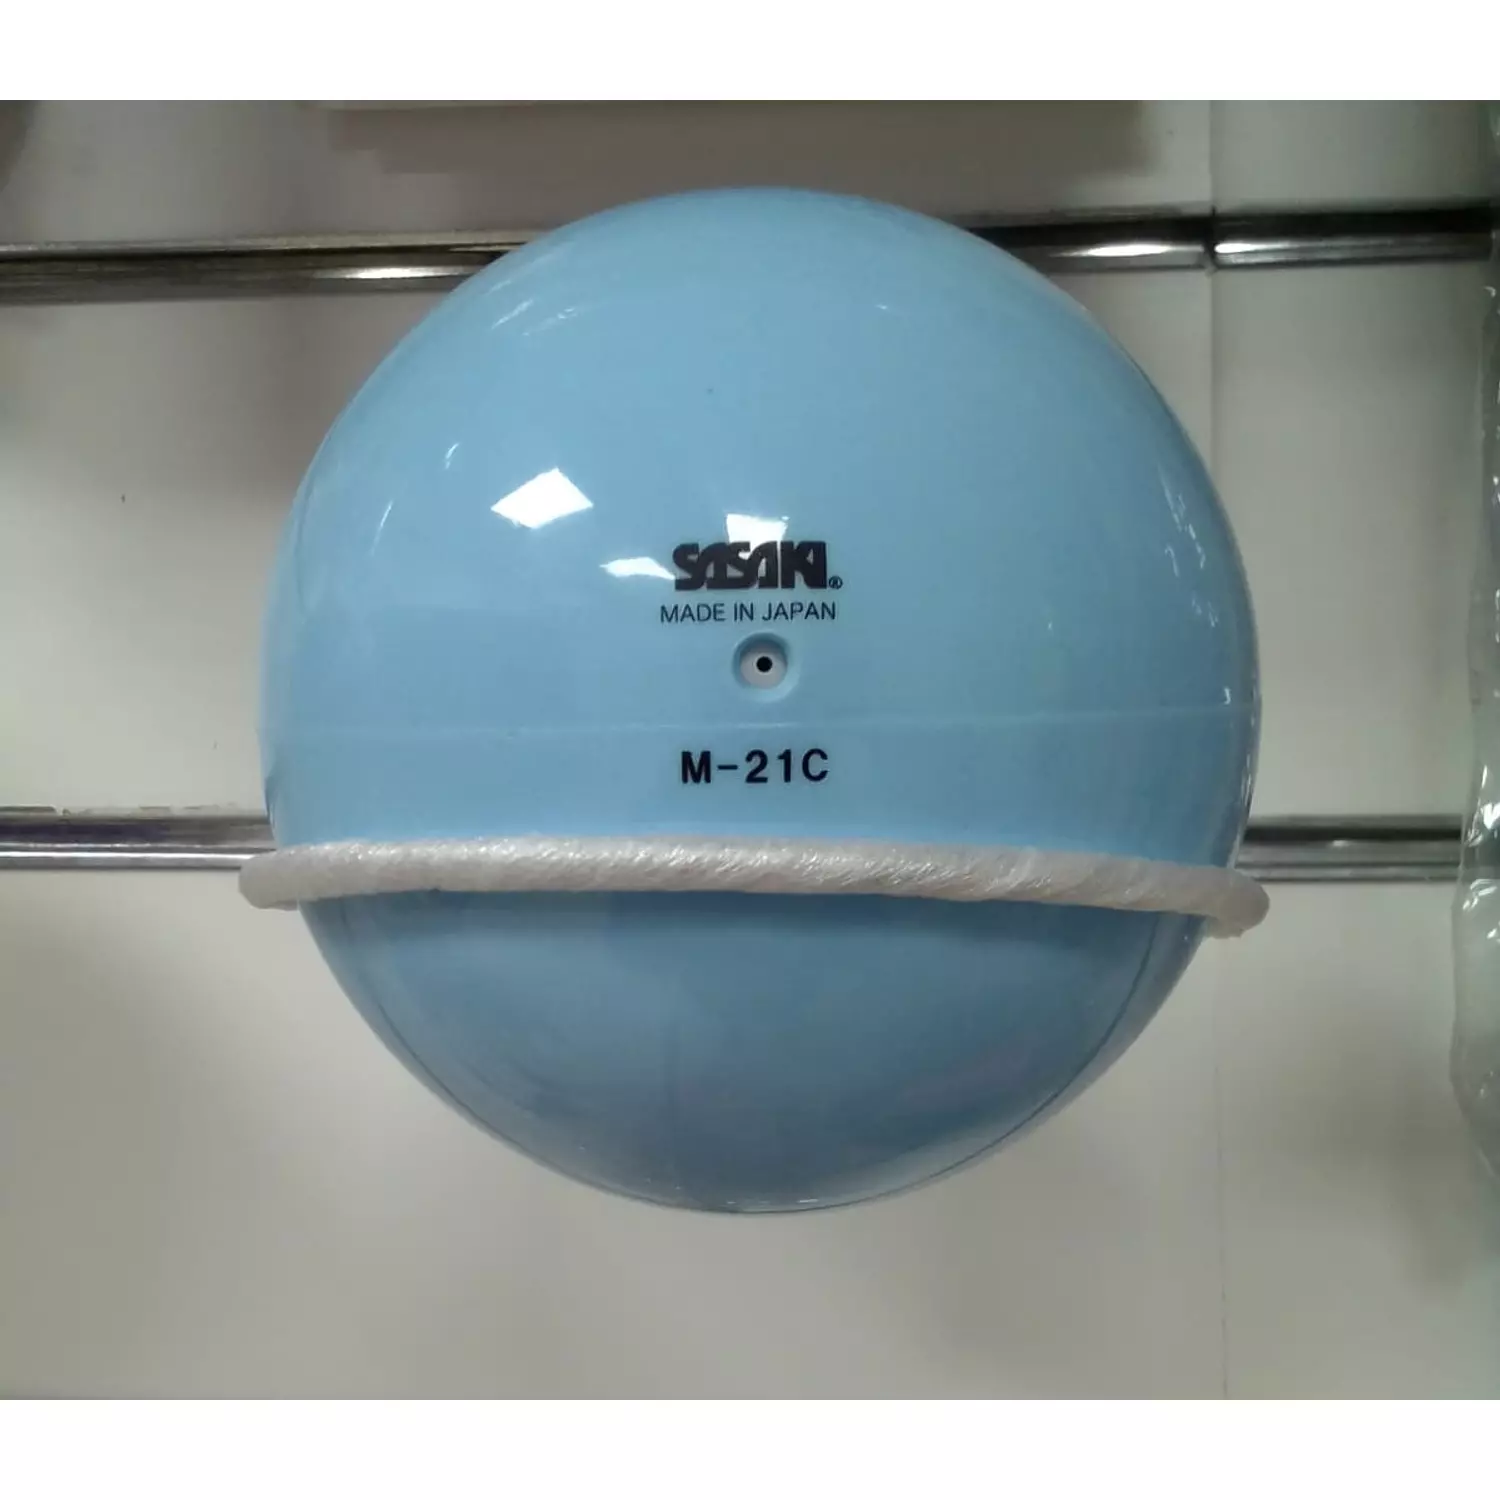 Sasaki-Junior Vinyl Ball M-21C 13-15cm hover image